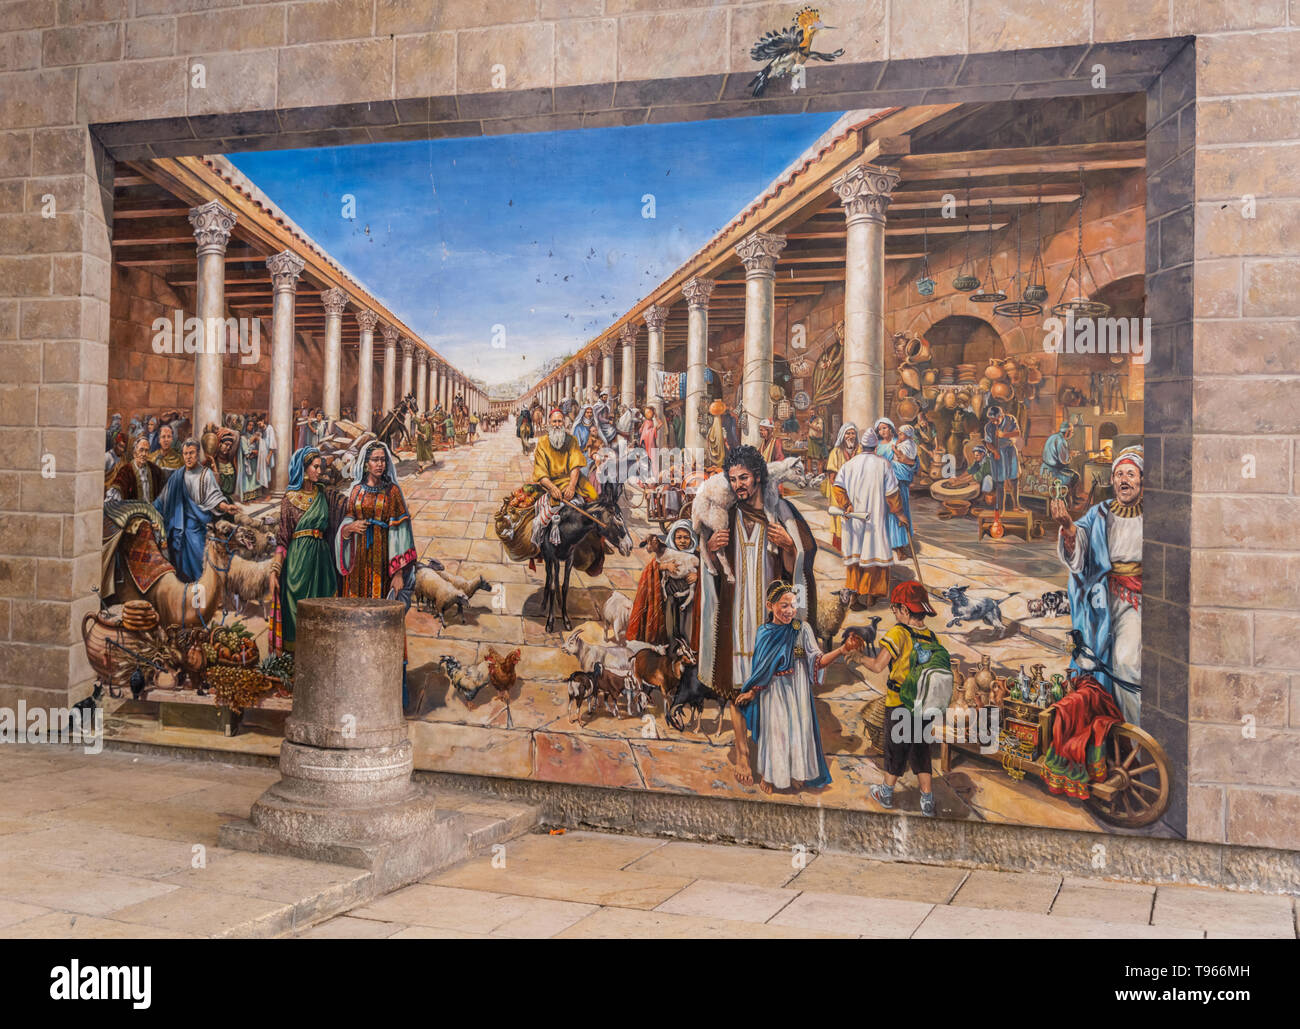 Ciudad Vieja de Jerusalén Israel moderno contemporáneo, pintura mural del Cardo en la época Romana Foto de stock